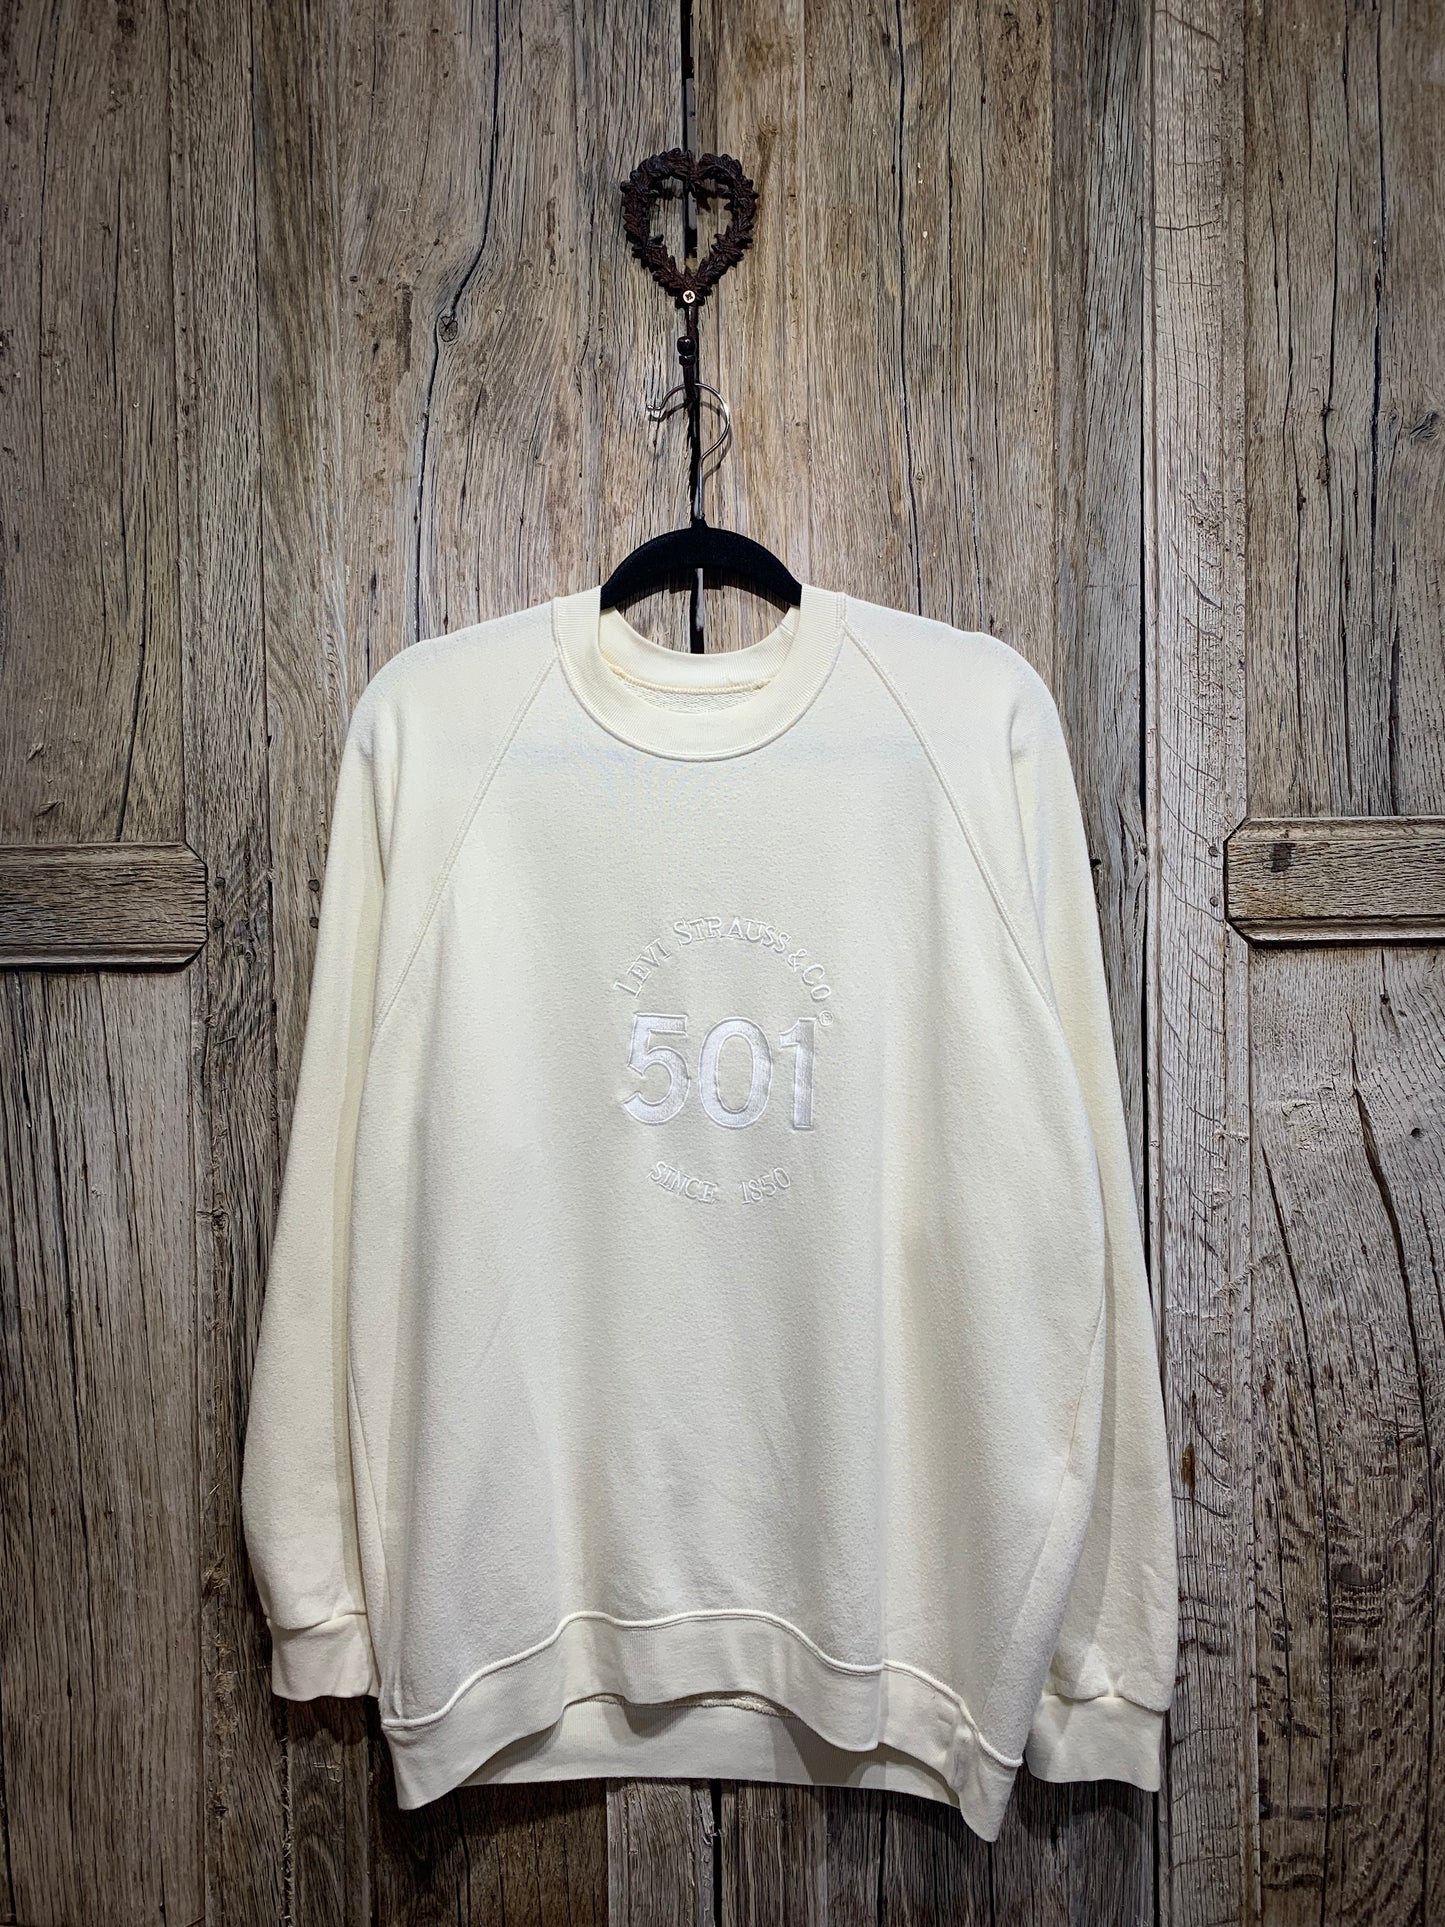 Vintage Levi’s 501 Embroidered Sweatshirt